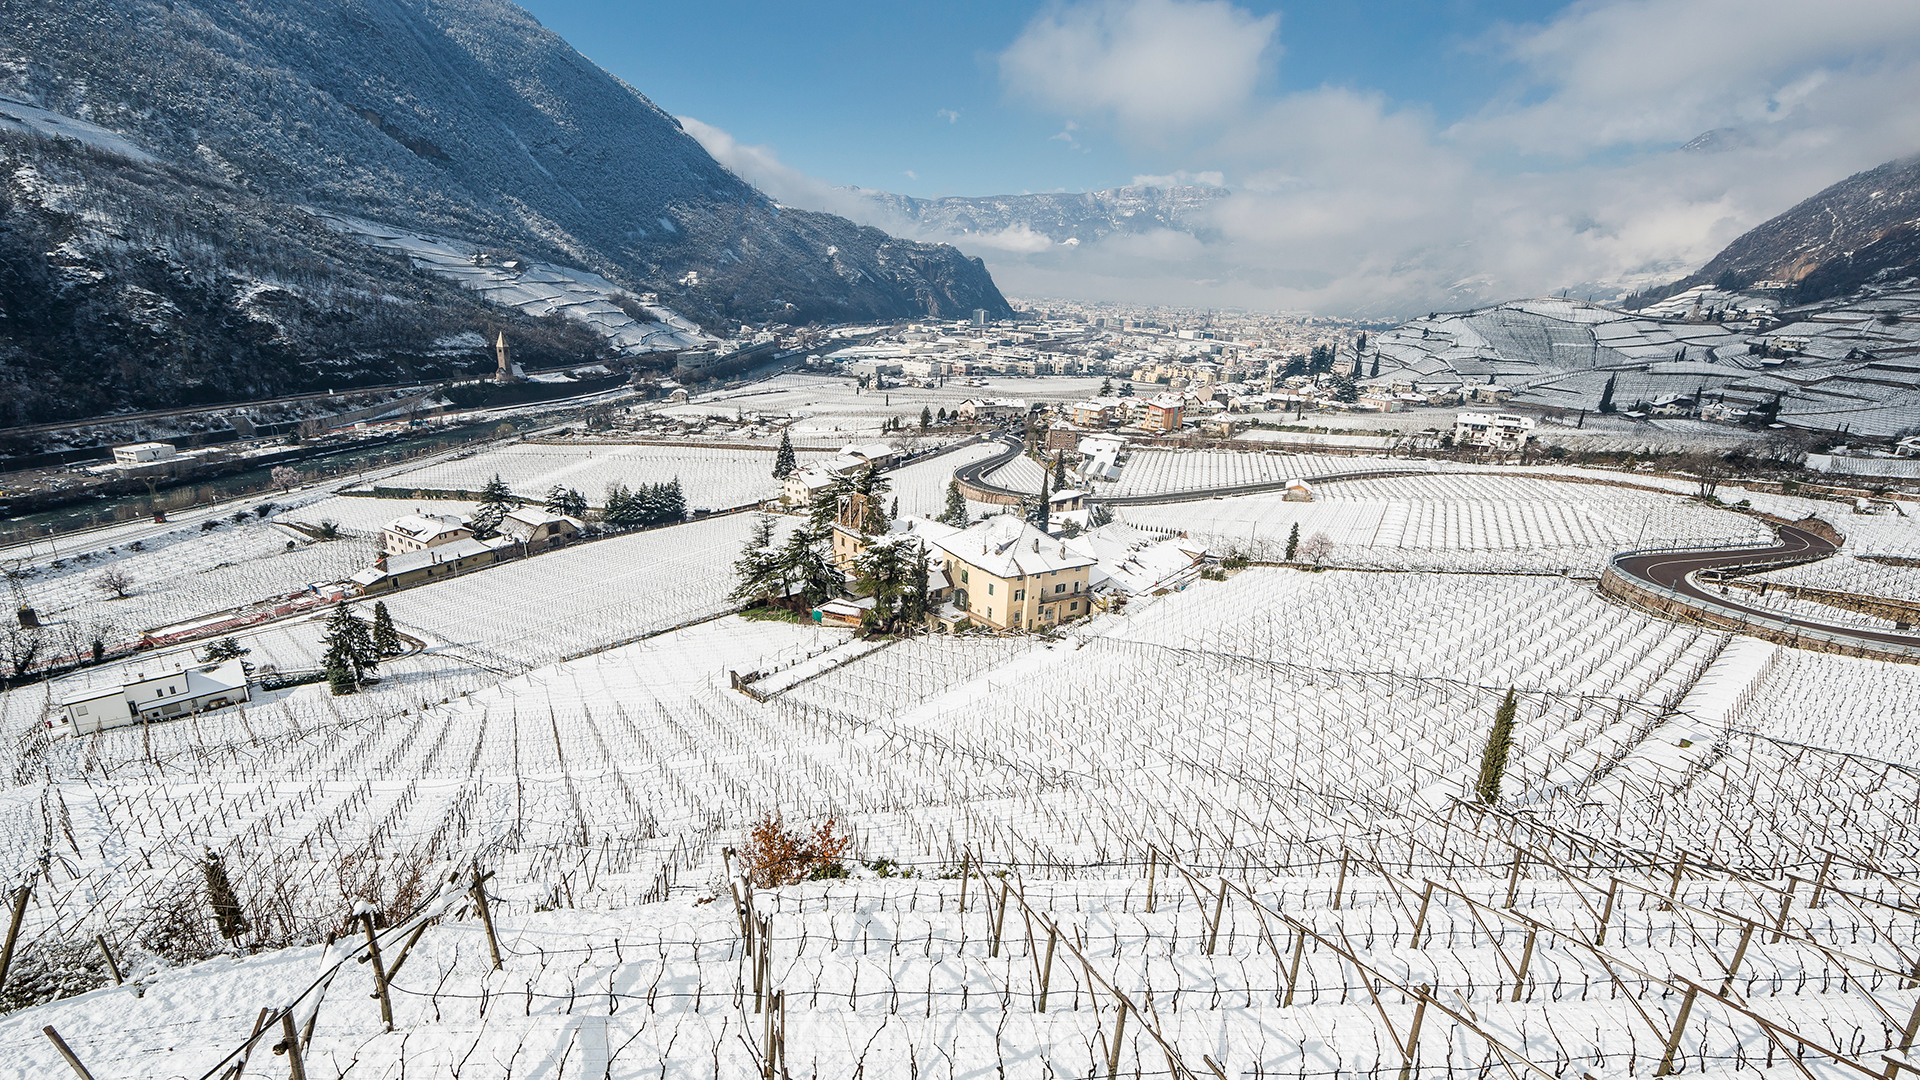 Paesaggio invernale un pomeriggio di sole a Bolzano dove i vitigni e i paesi sono ricoperti dalla neve.